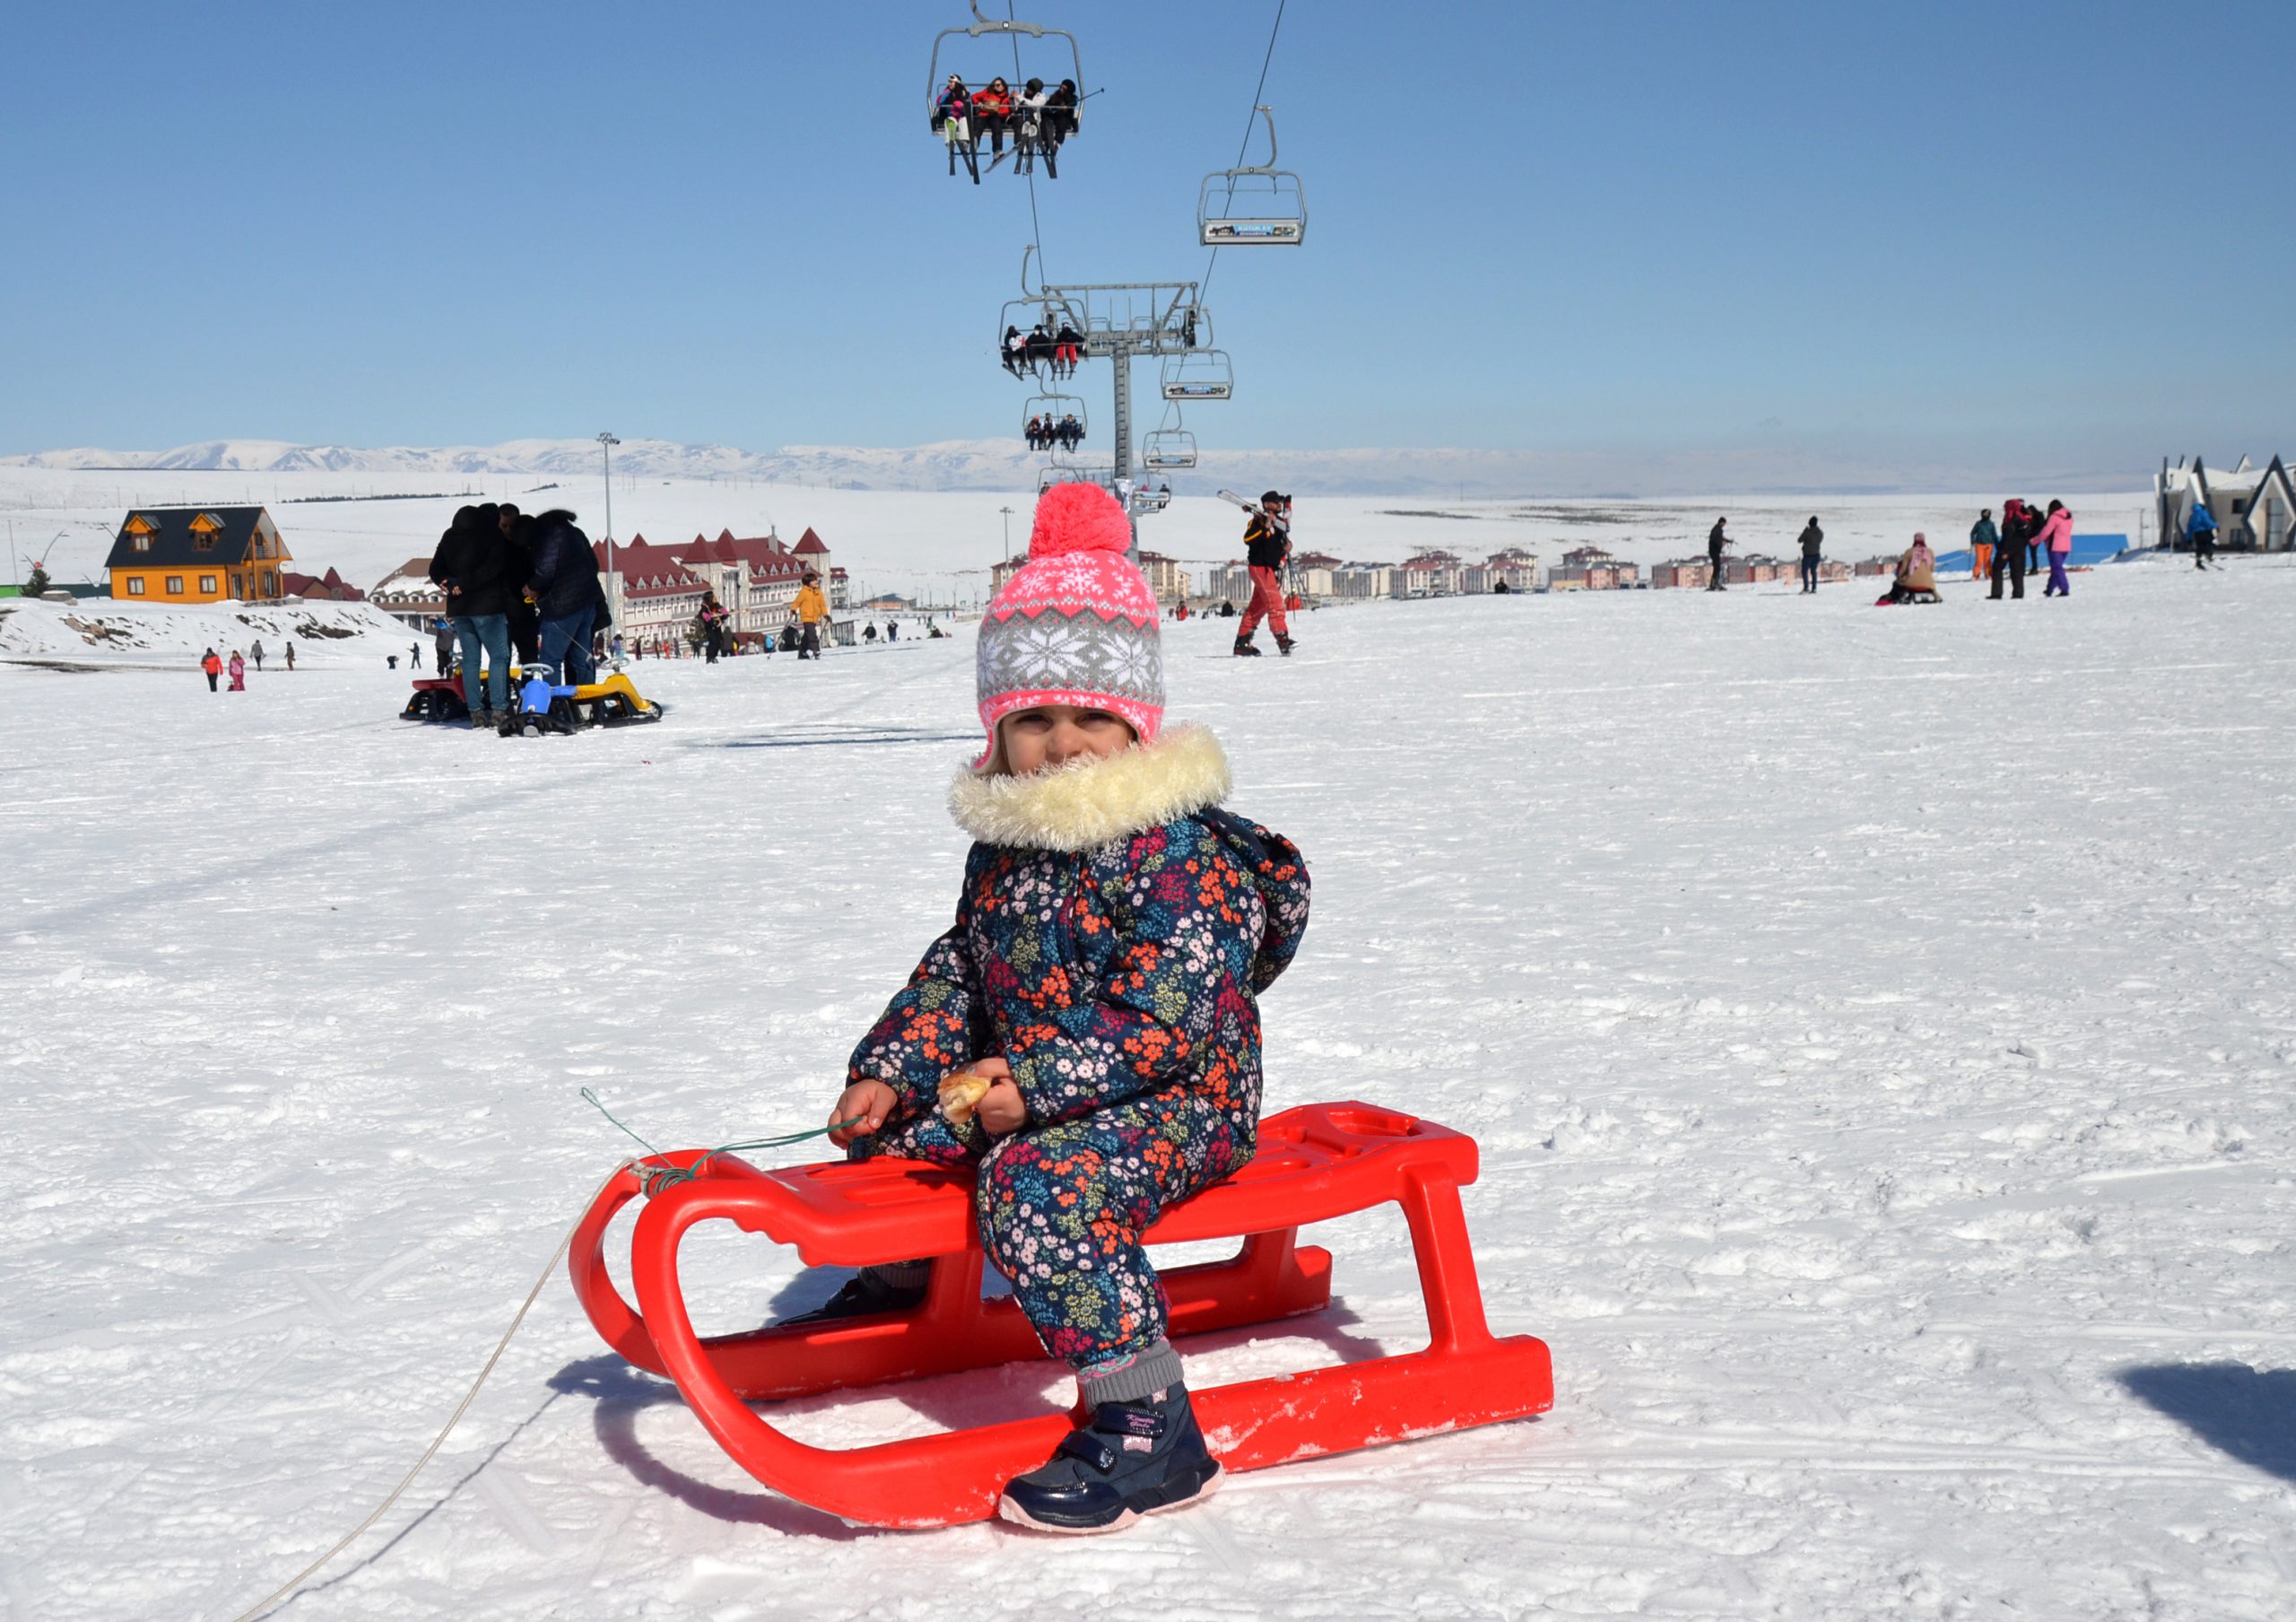 Turistler güneşli havanın keyfini Cıbıltepe’de kayak yaparak çıkardı